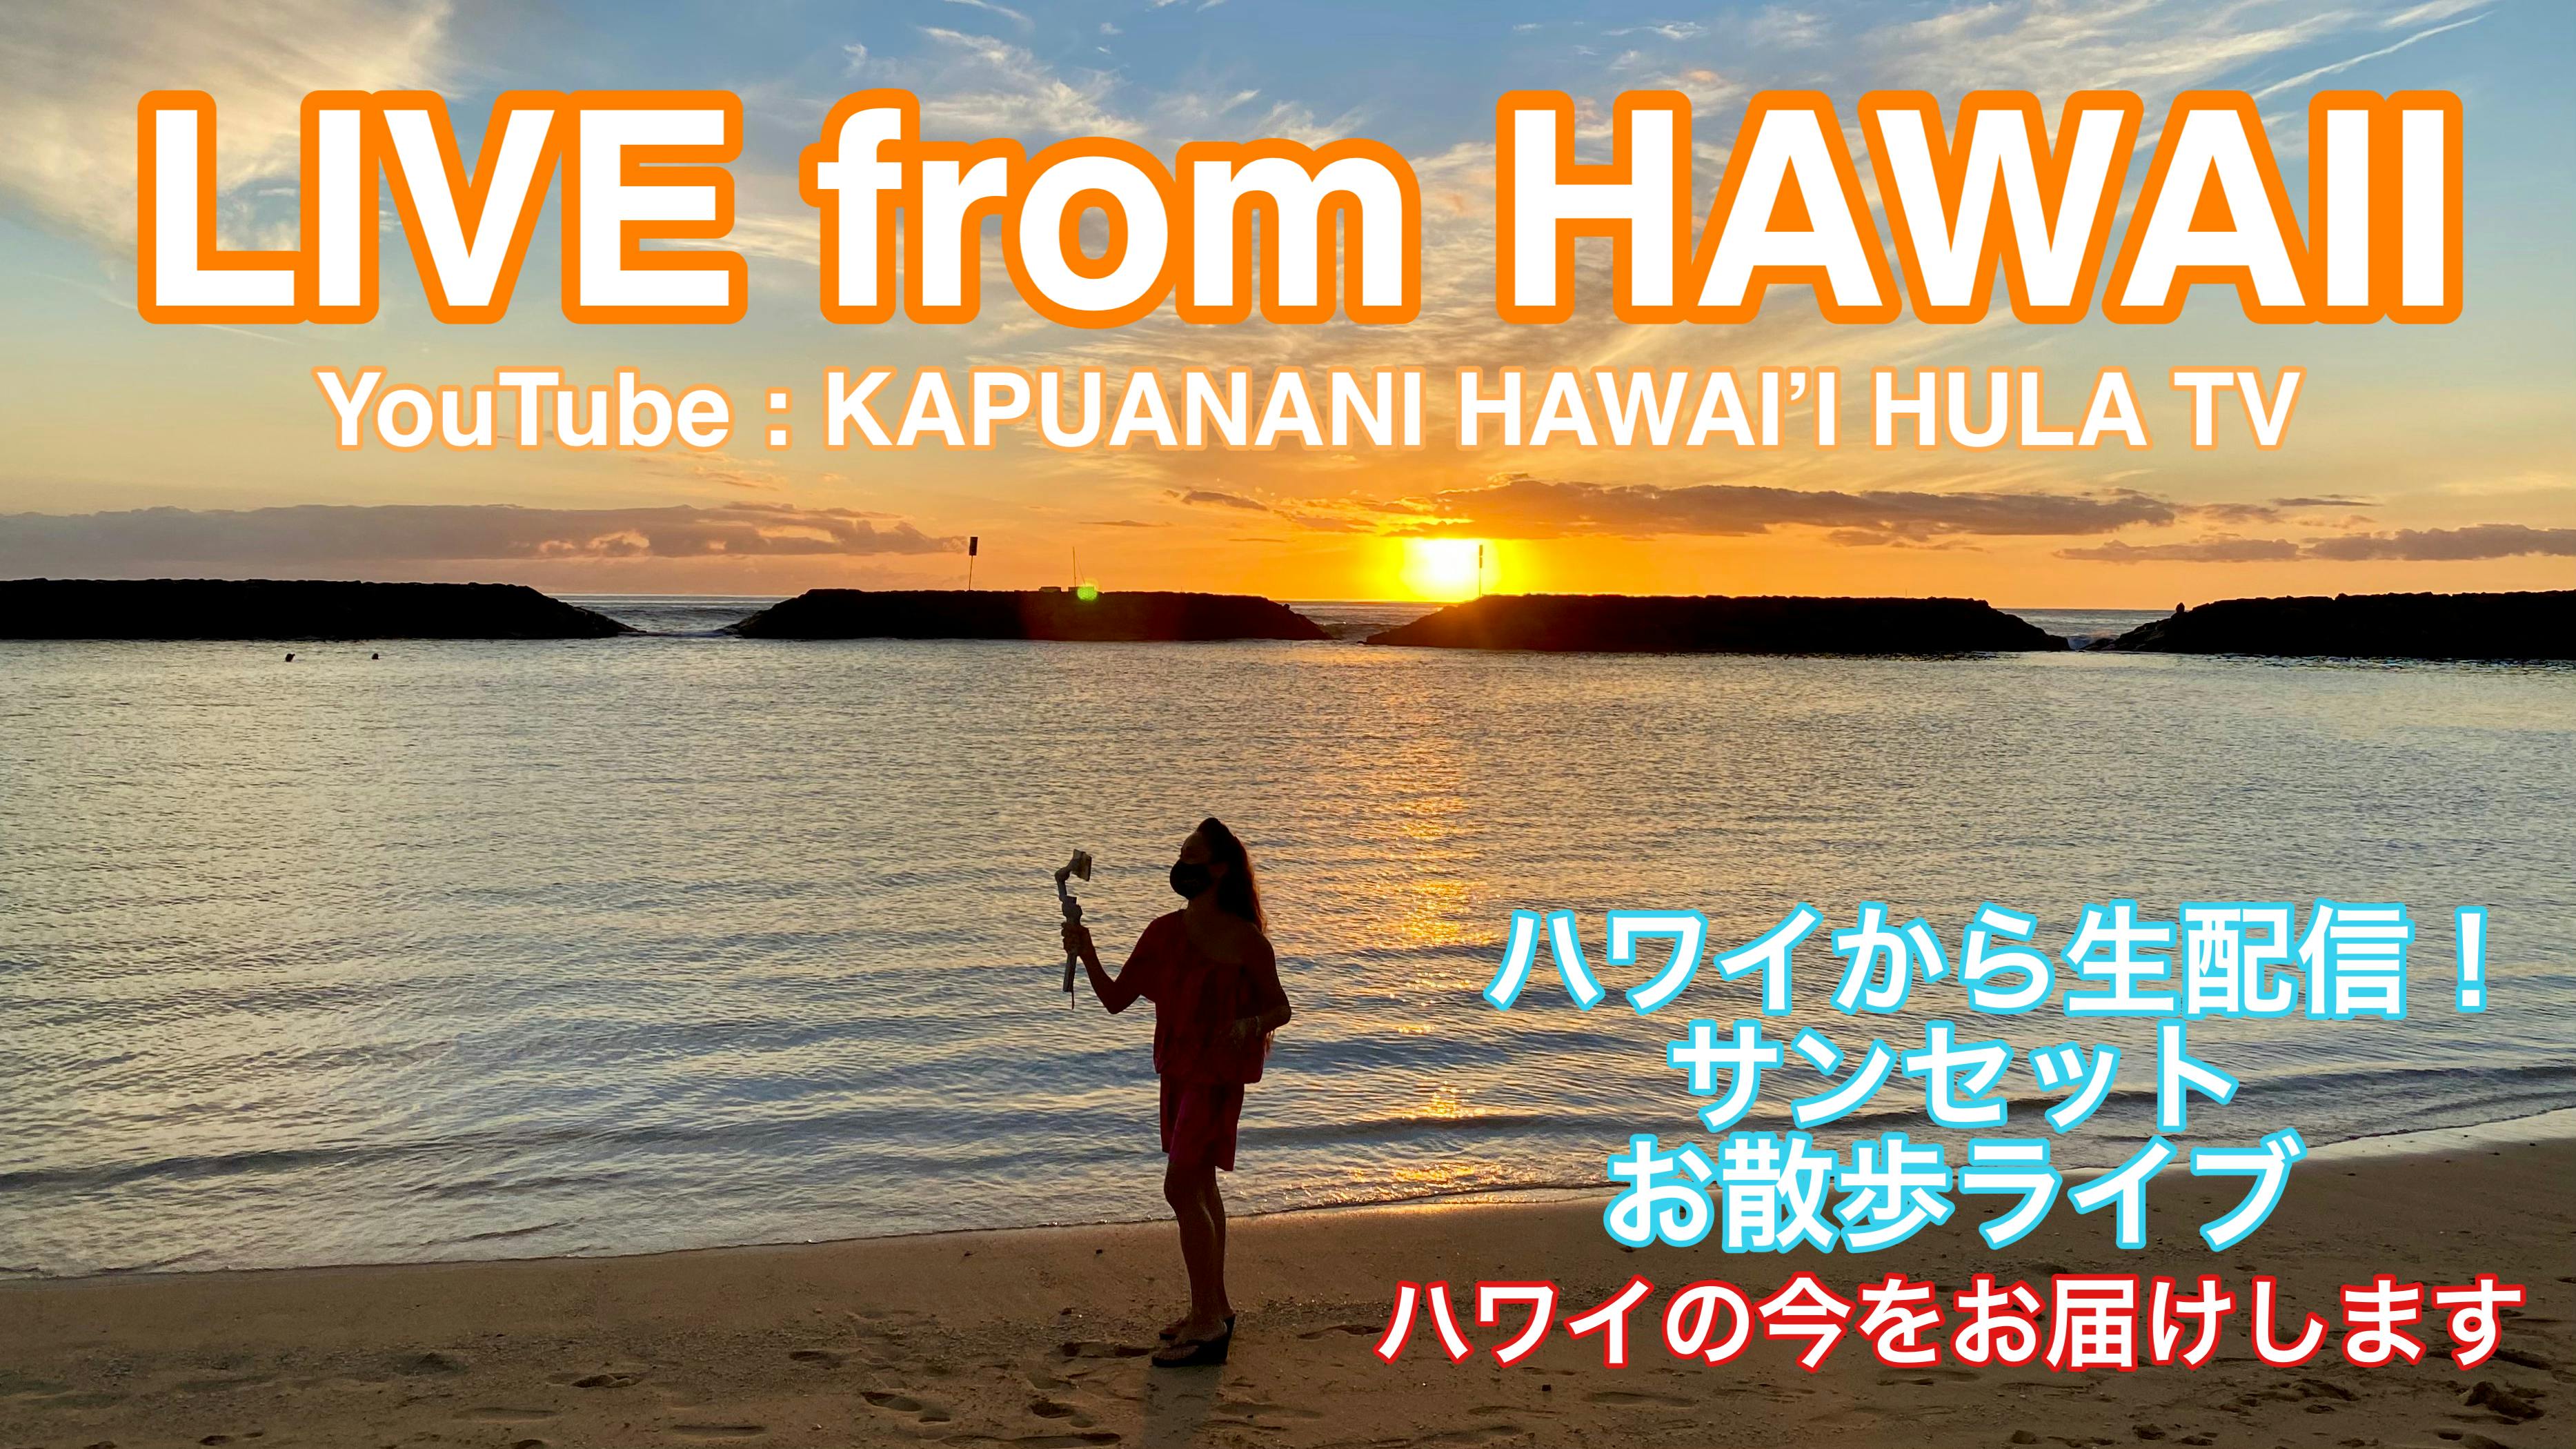 ハワイの今 をタイムリーにお届けしたい ハワイと日本を繋ぐ動画制作プロジェクト Campfire キャンプファイヤー